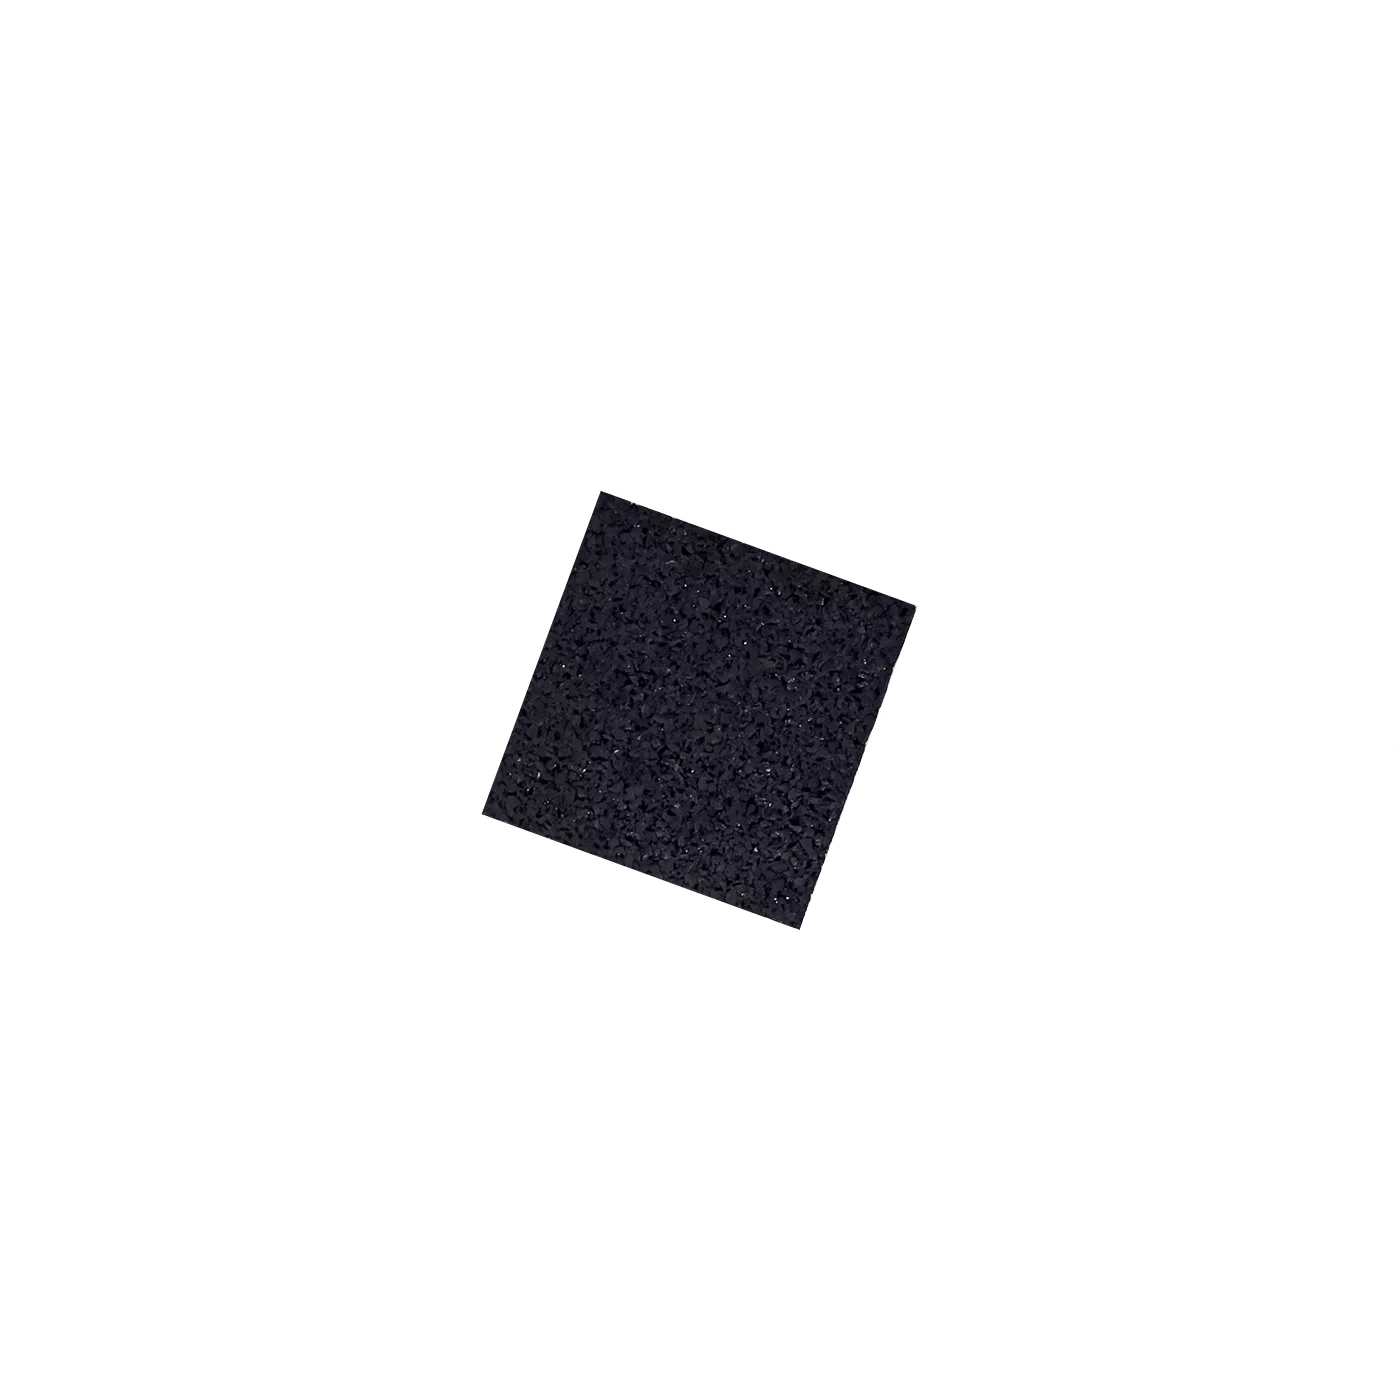 Gumová univerzálna podložka FLOMA UniPad - dĺžka 9 cm, šírka 9 cm, výška 0,6 cm